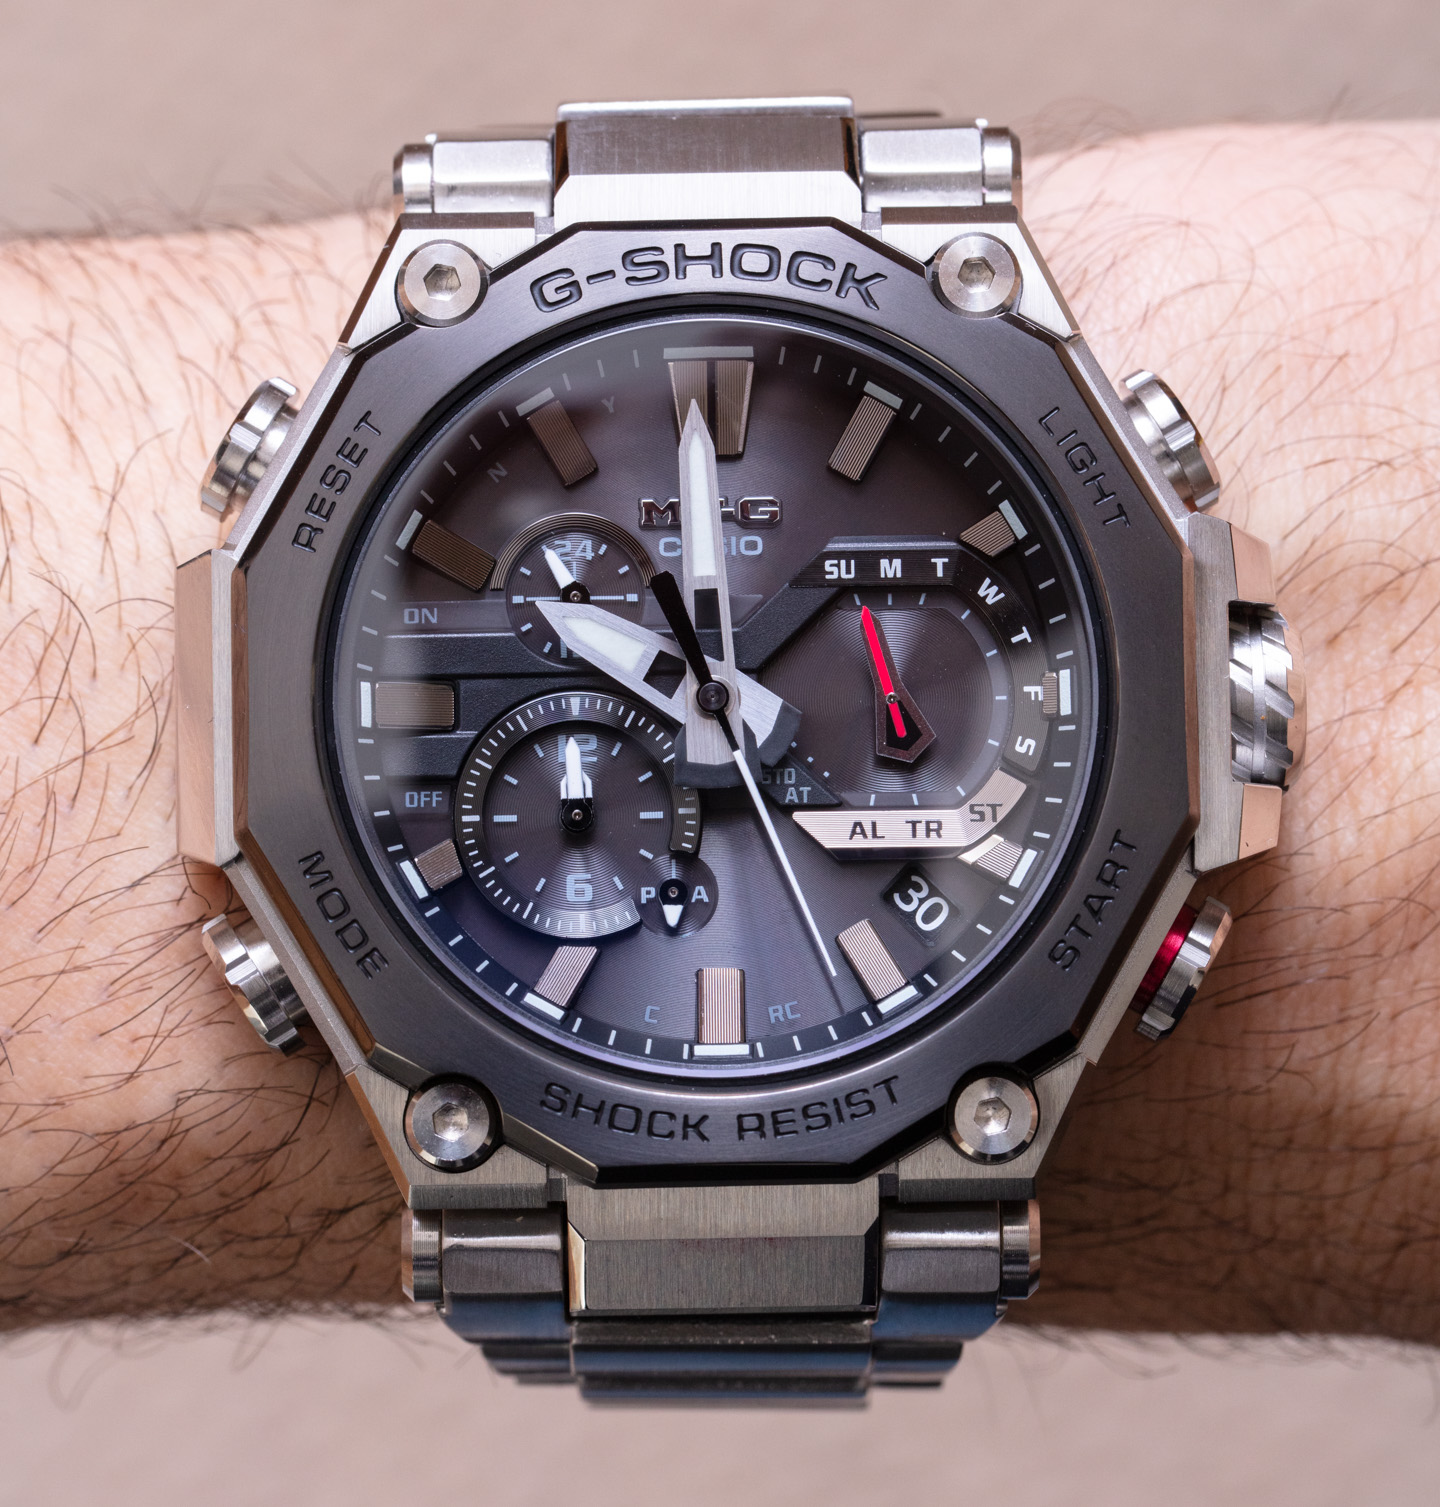 Hands-On: Casio G-Shock MT-G B2000 Watch | aBlogtoWatch